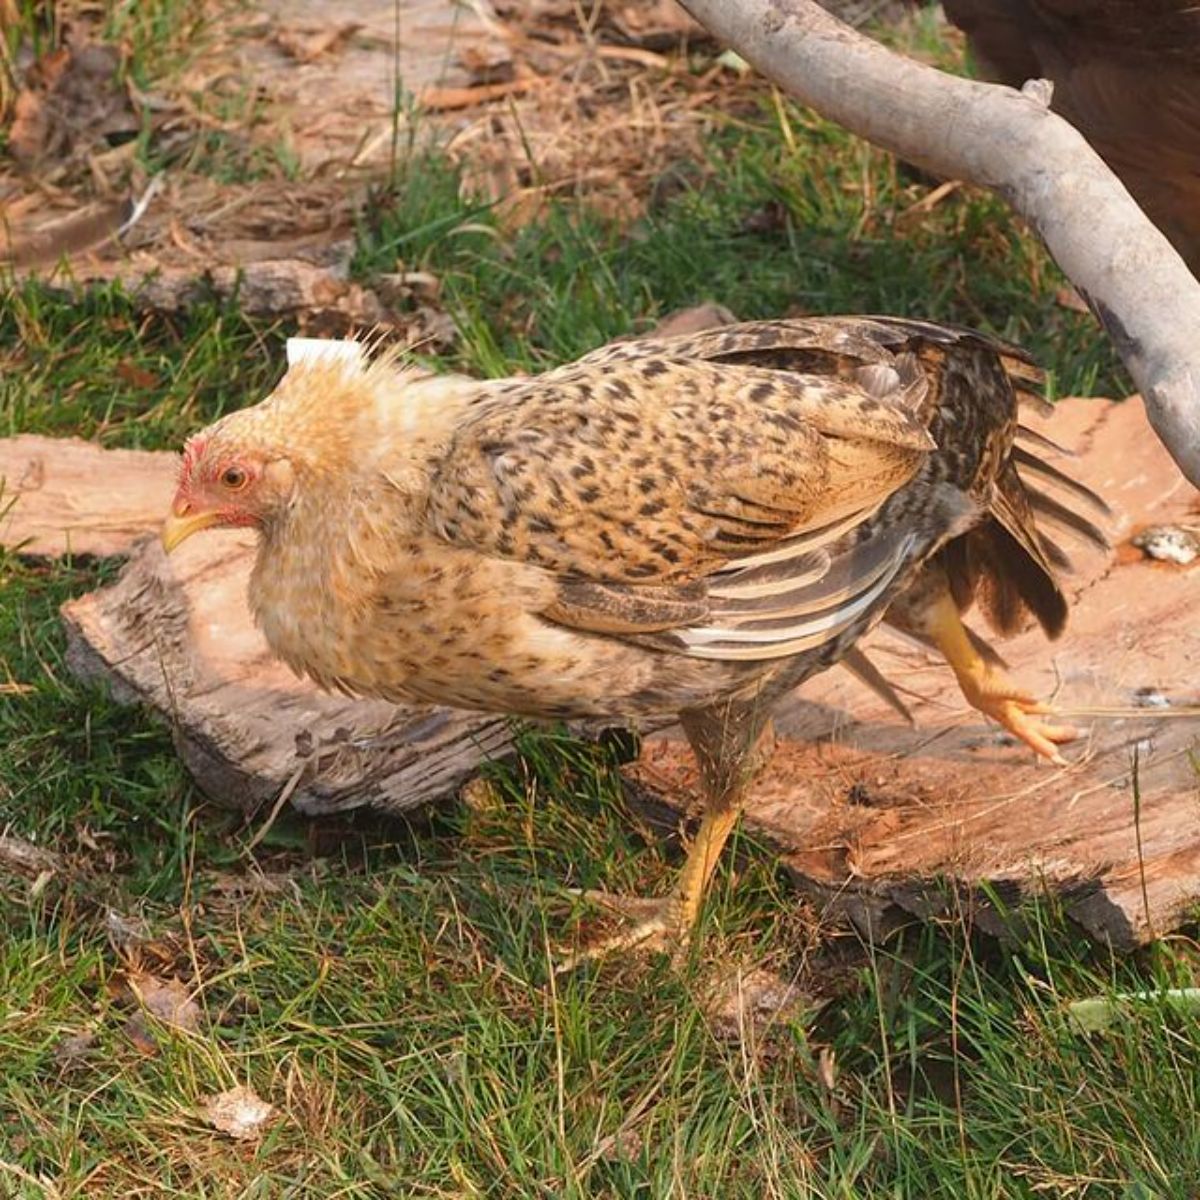 A Jaerhon Chicken walking in a backyard.